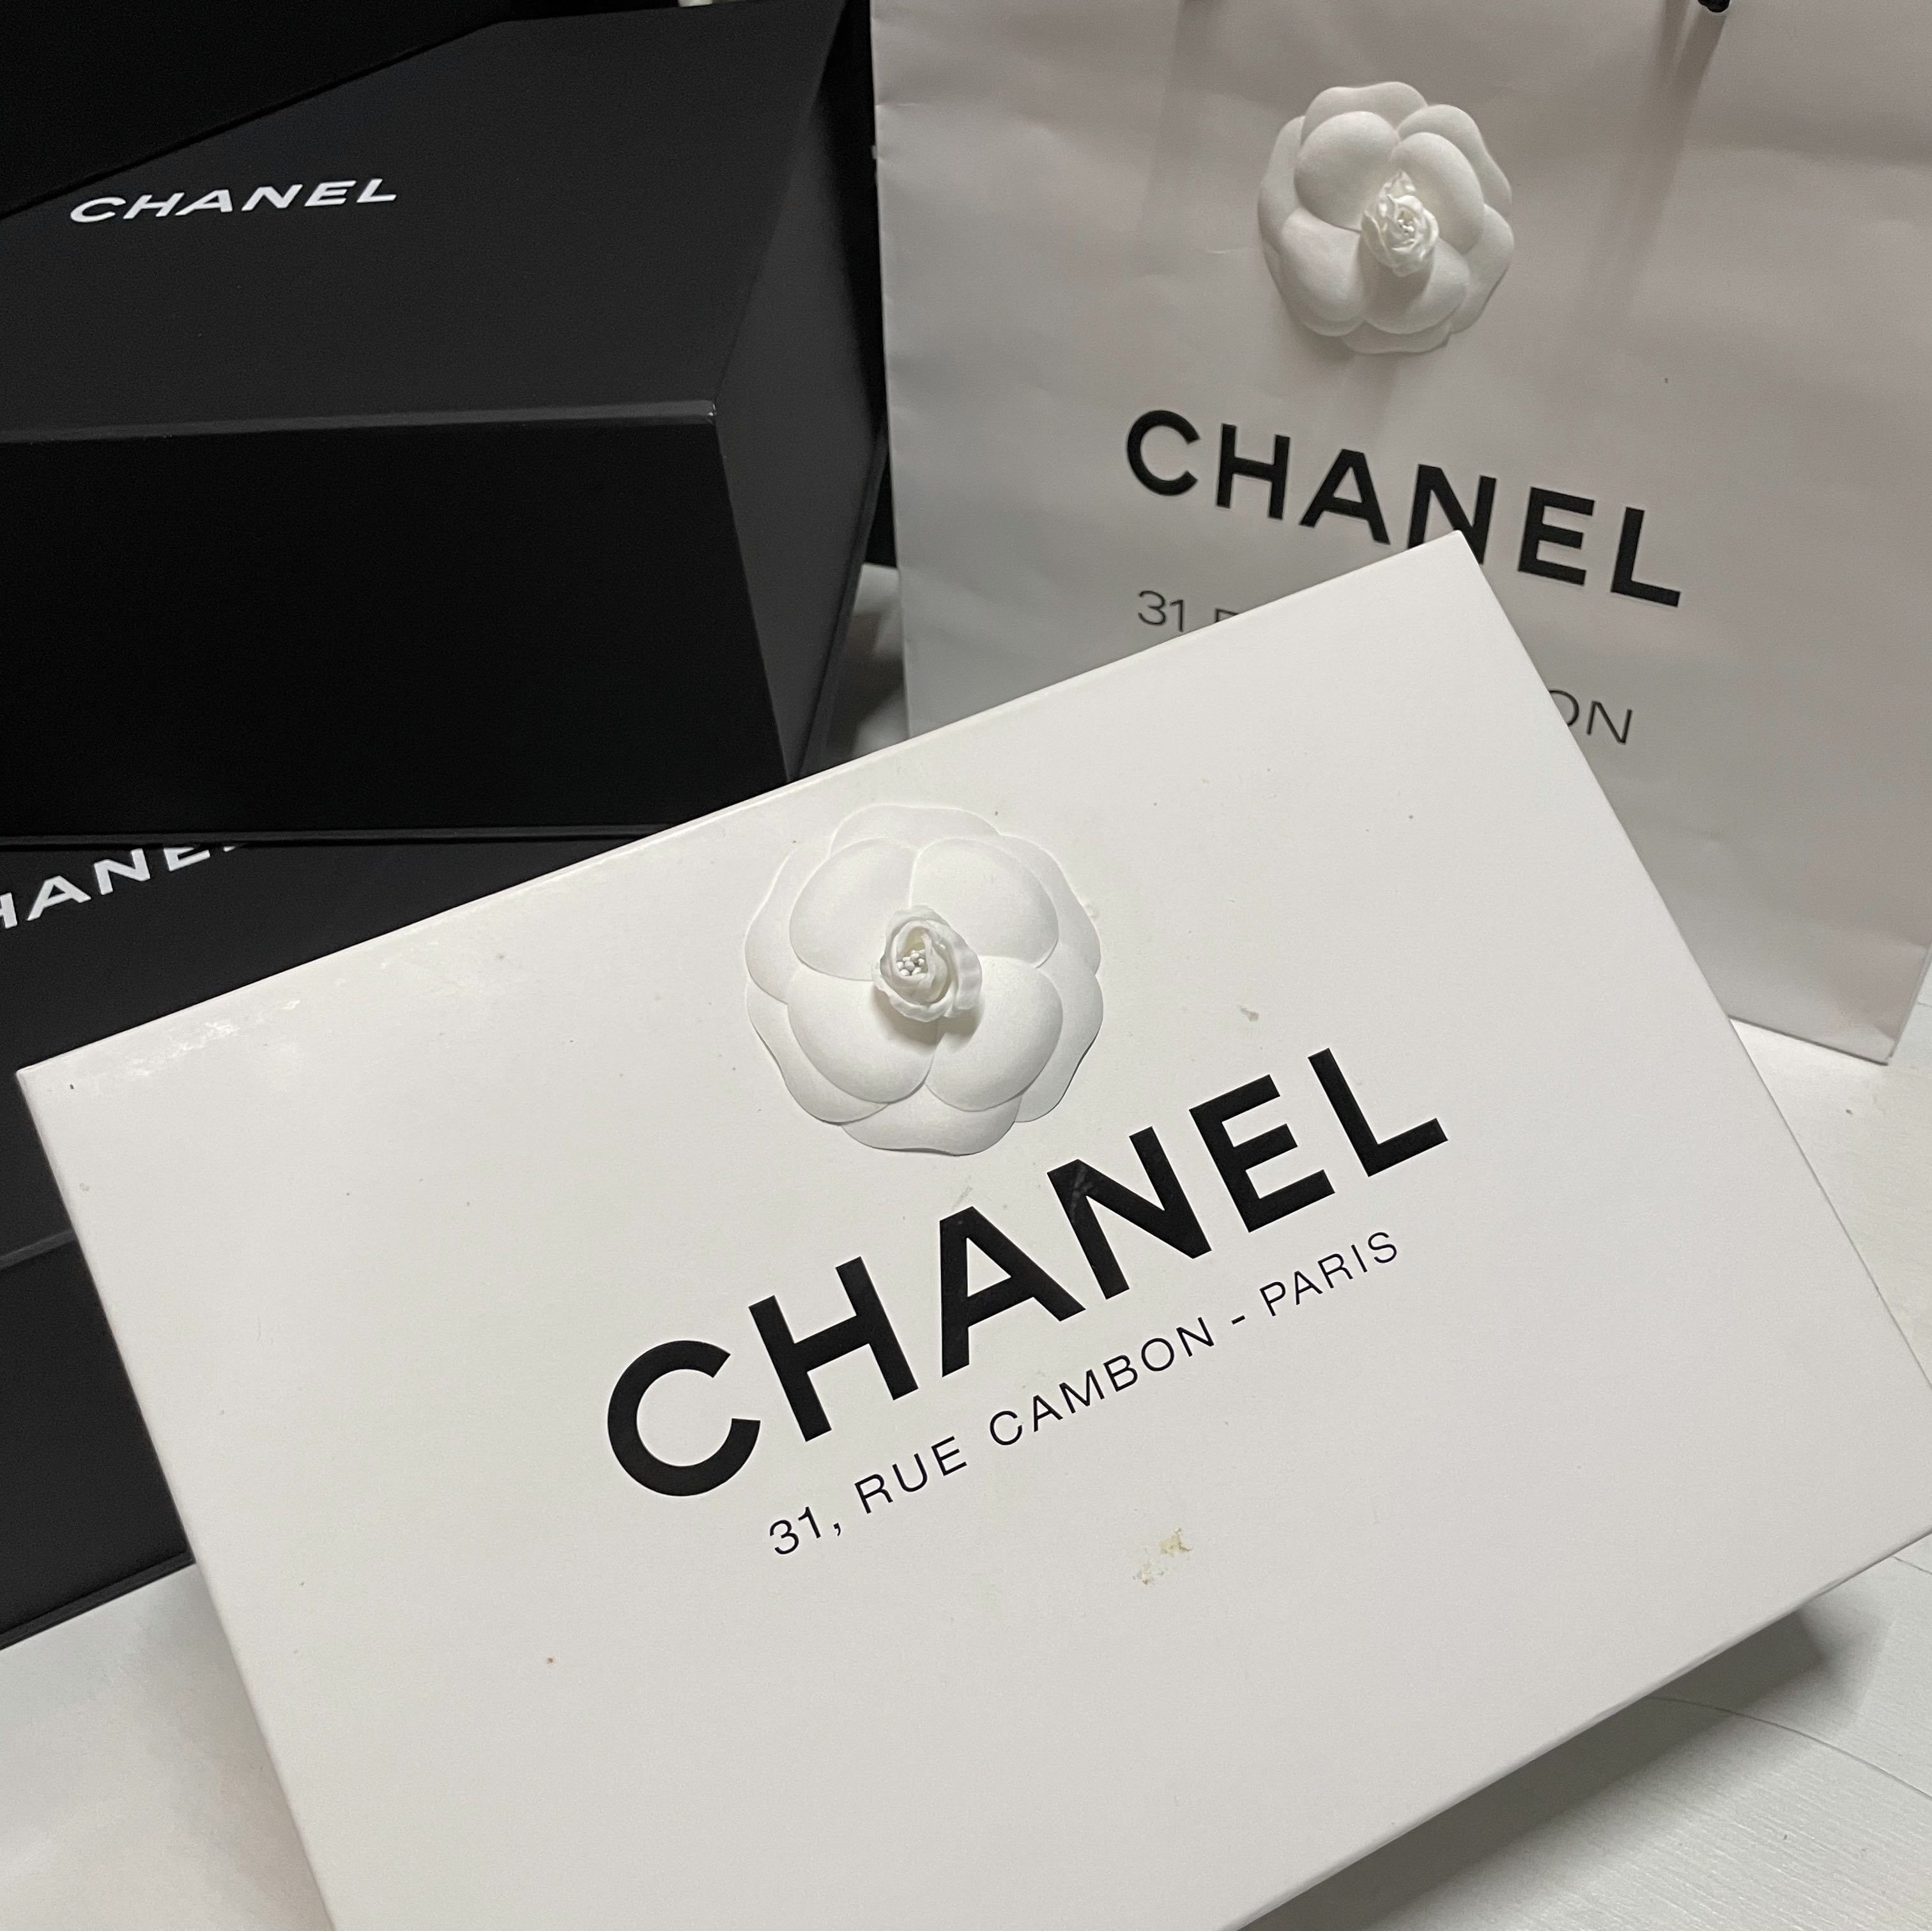 Chanel Paris  31 rue Cambon 201920 Métiers dart Cuộc đối thoại cùng  tinh hoa nhà nghề giữa lòng một di sản